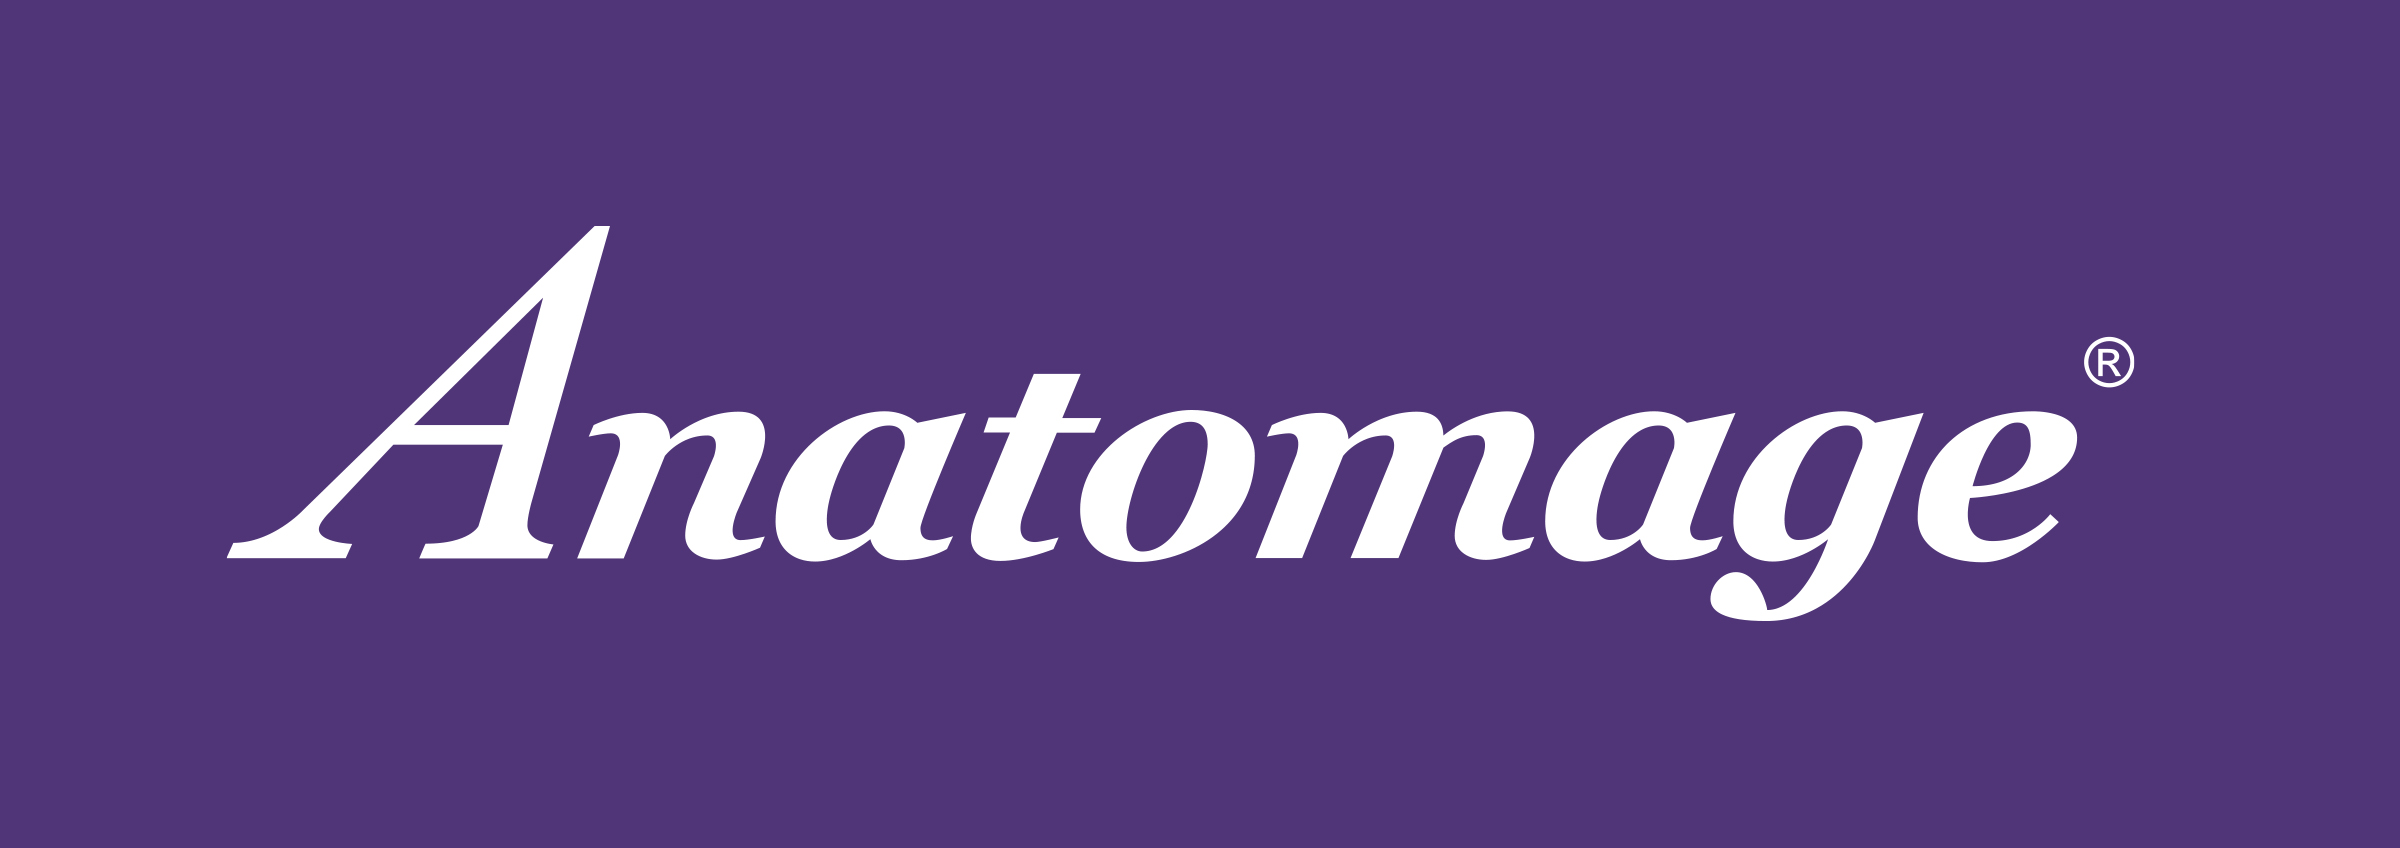 Anatomage[purple-box]